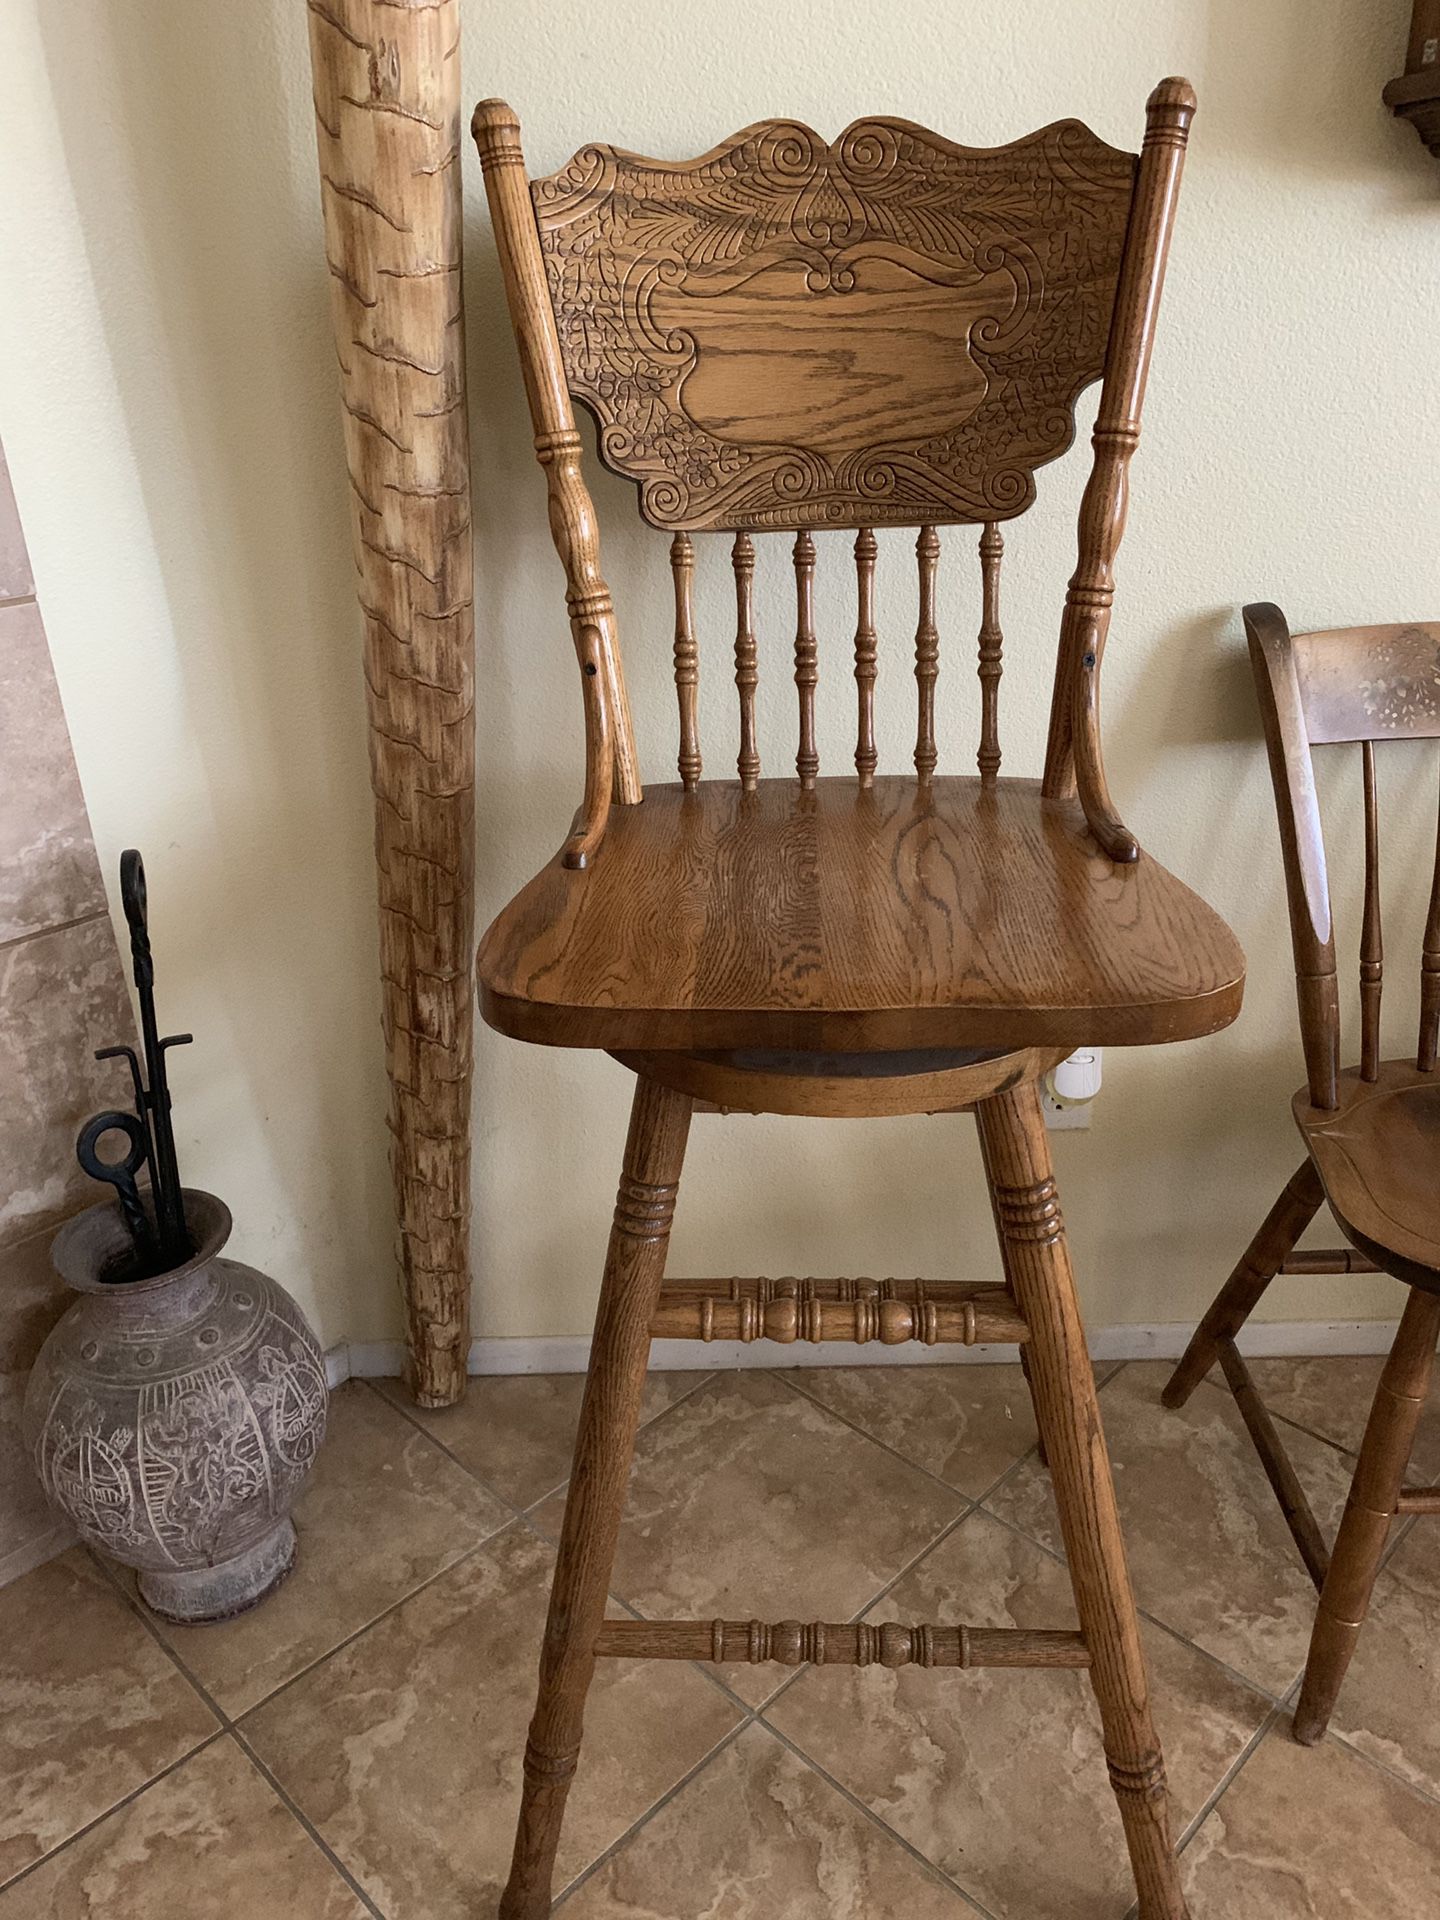 Wooden bar stool $20 firm